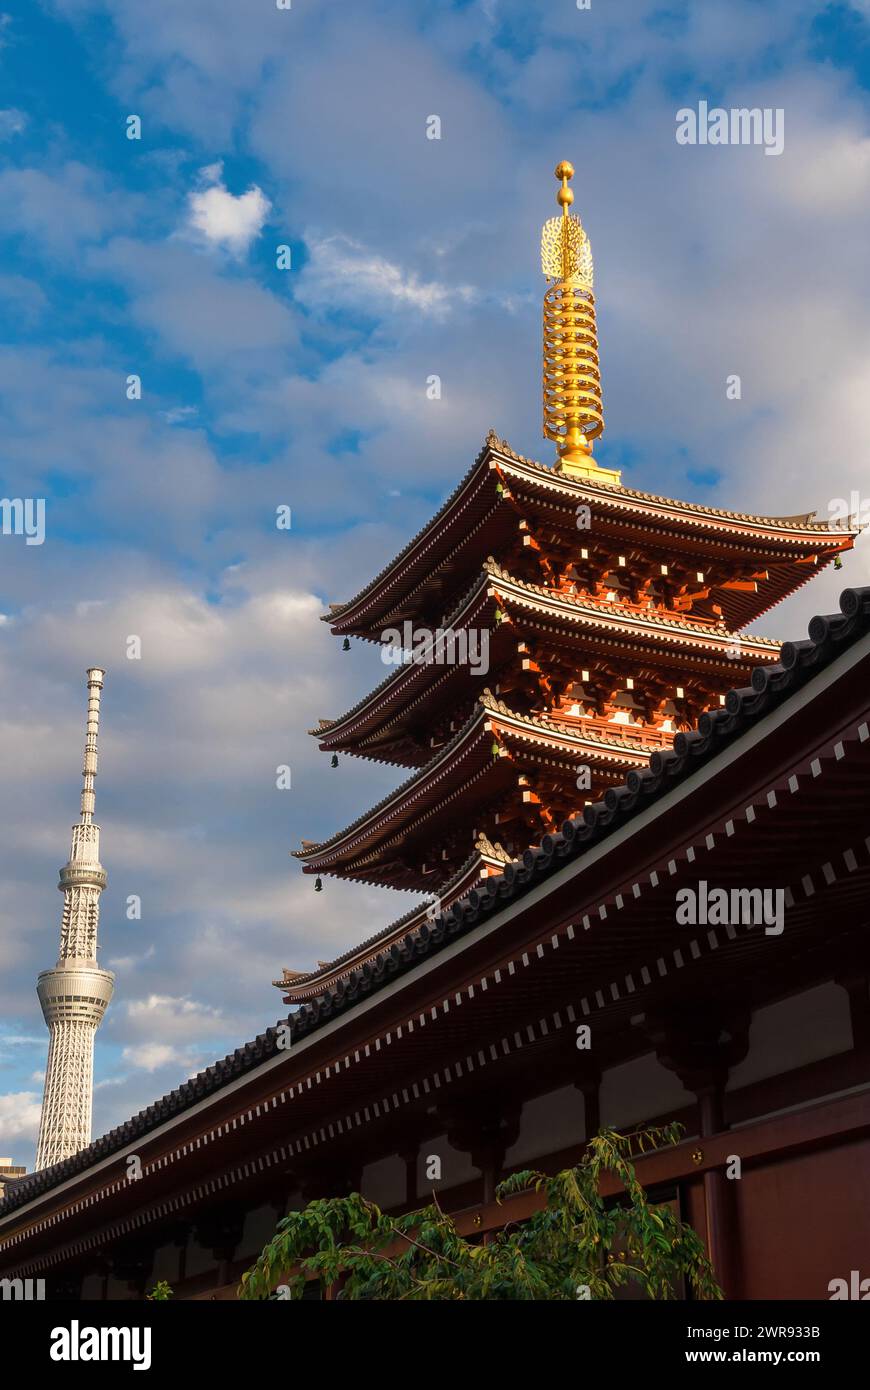 Giappone tra tradizione e modernità. Antica senso-ji bellissima pagoda ad Asakusa con il nuovo Tokyo Skytree, la torre più alta del mondo Foto Stock